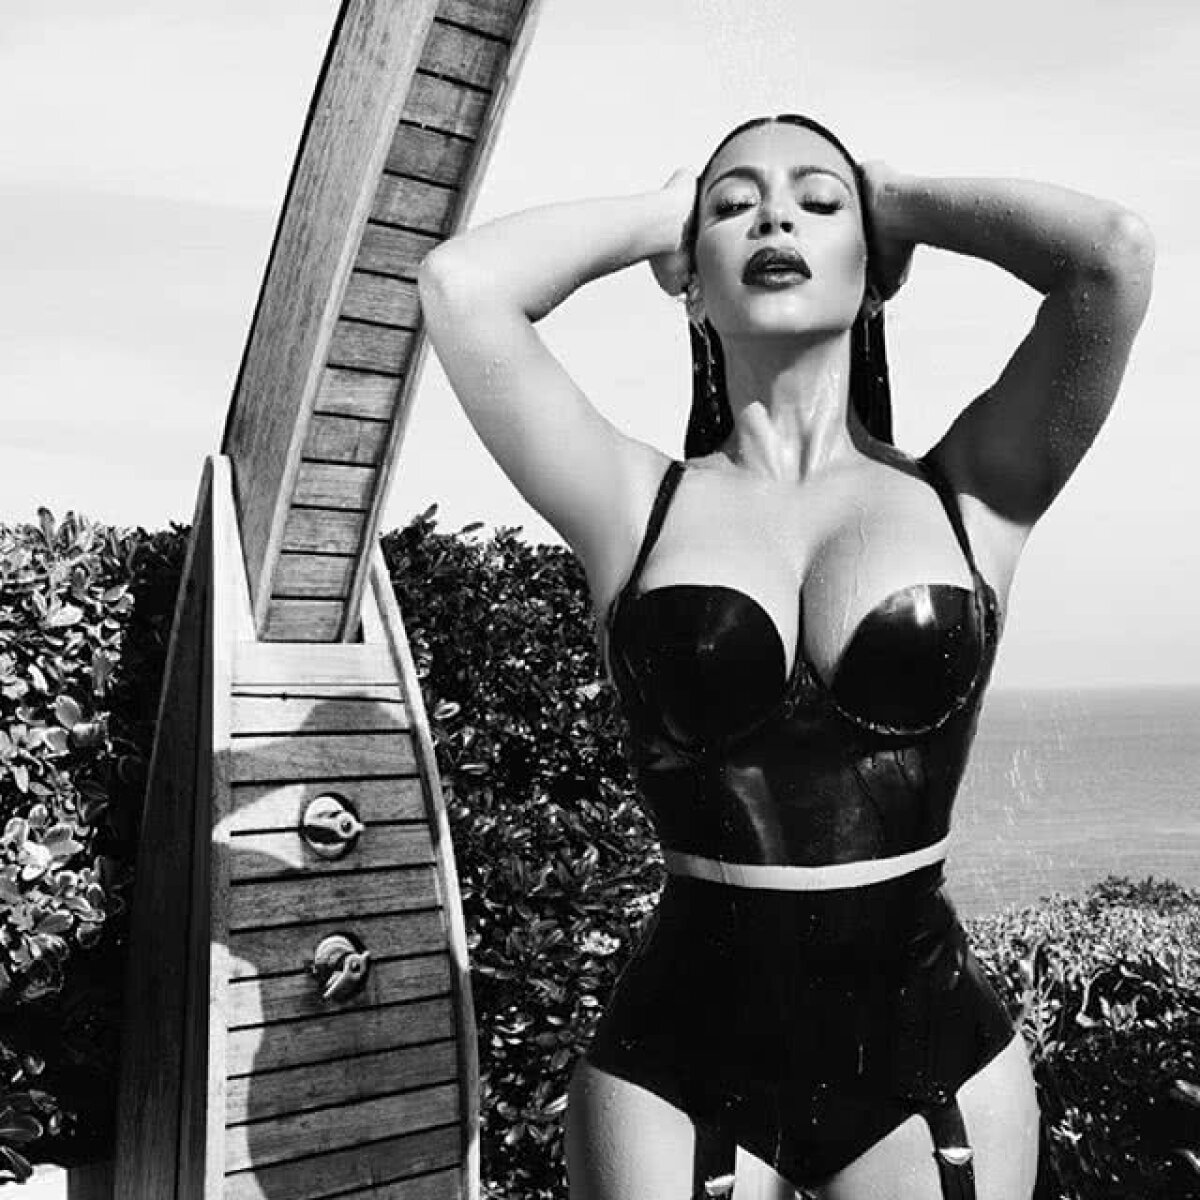 FOTO INCENDIAR Kim Kardashian a pozat nud, iar poza ei a stârnit noi controverse